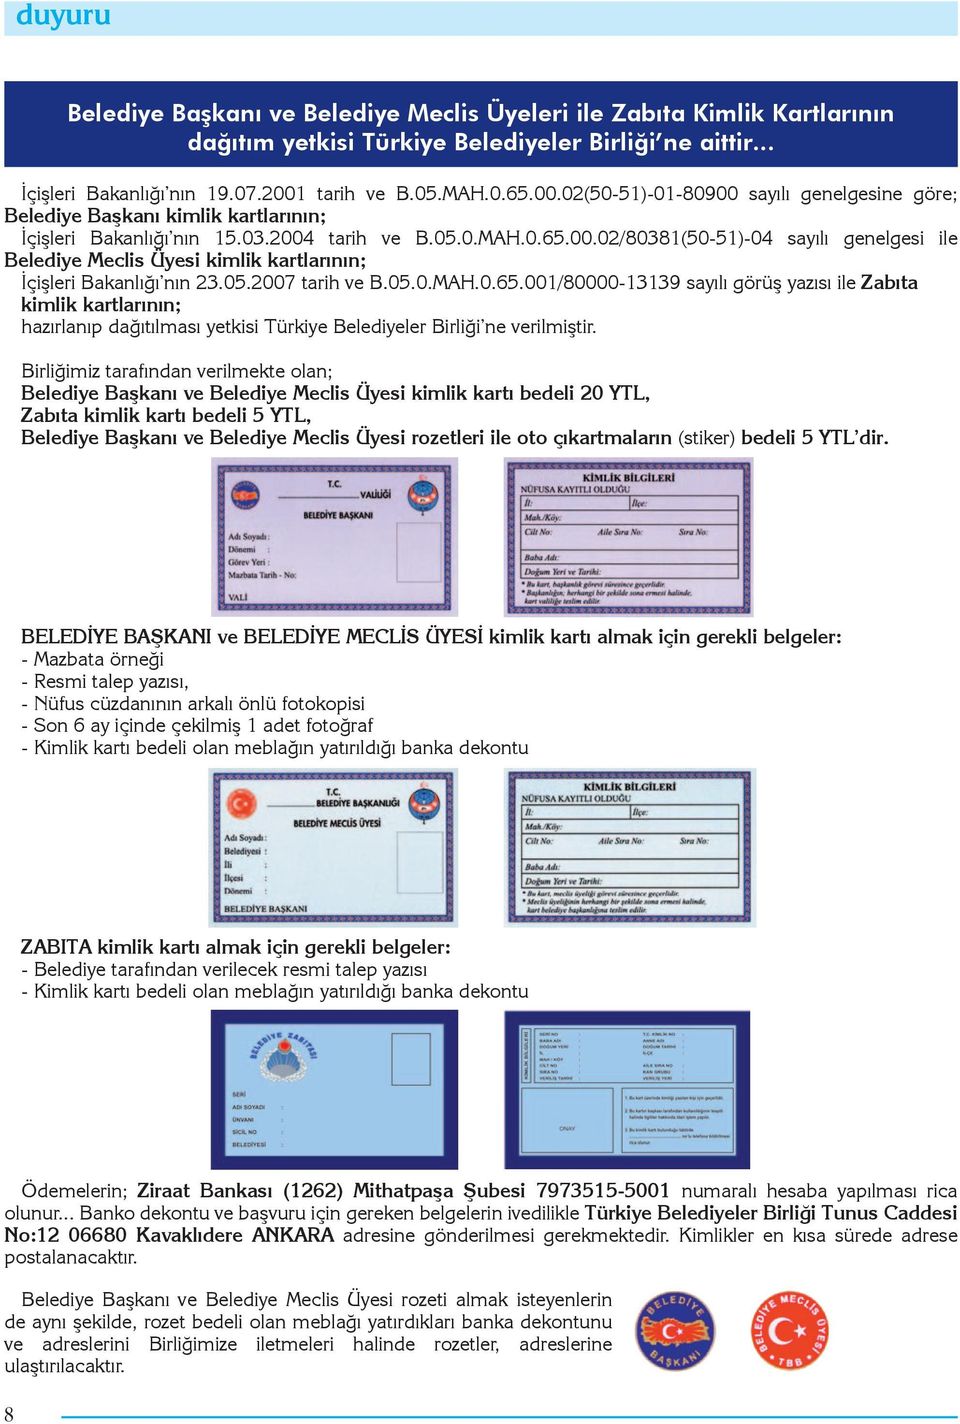 05.2007 tarih ve B.05.0.MAH.0.65.001/80000-13139 sayılı görüş yazısı ile Zabıta kimlik kartlarının; hazırlanıp dağıtılması yetkisi Türkiye Belediyeler Birliği ne verilmiştir.